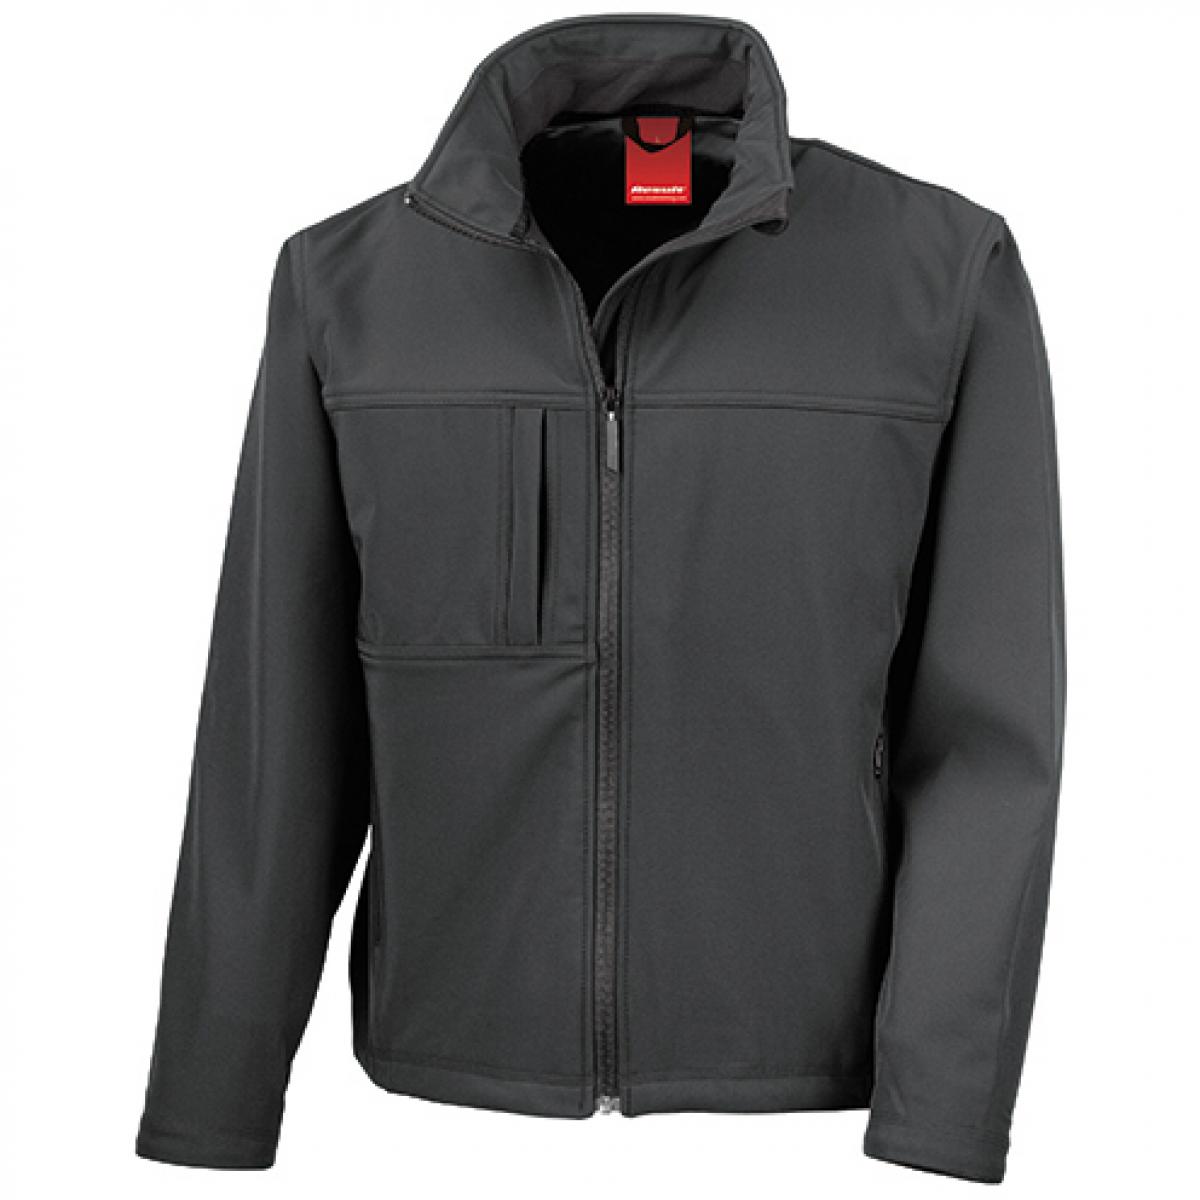 Hersteller: Result Herstellernummer: R121M Artikelbezeichnung: Classic Soft Shell Jacket Farbe: Black